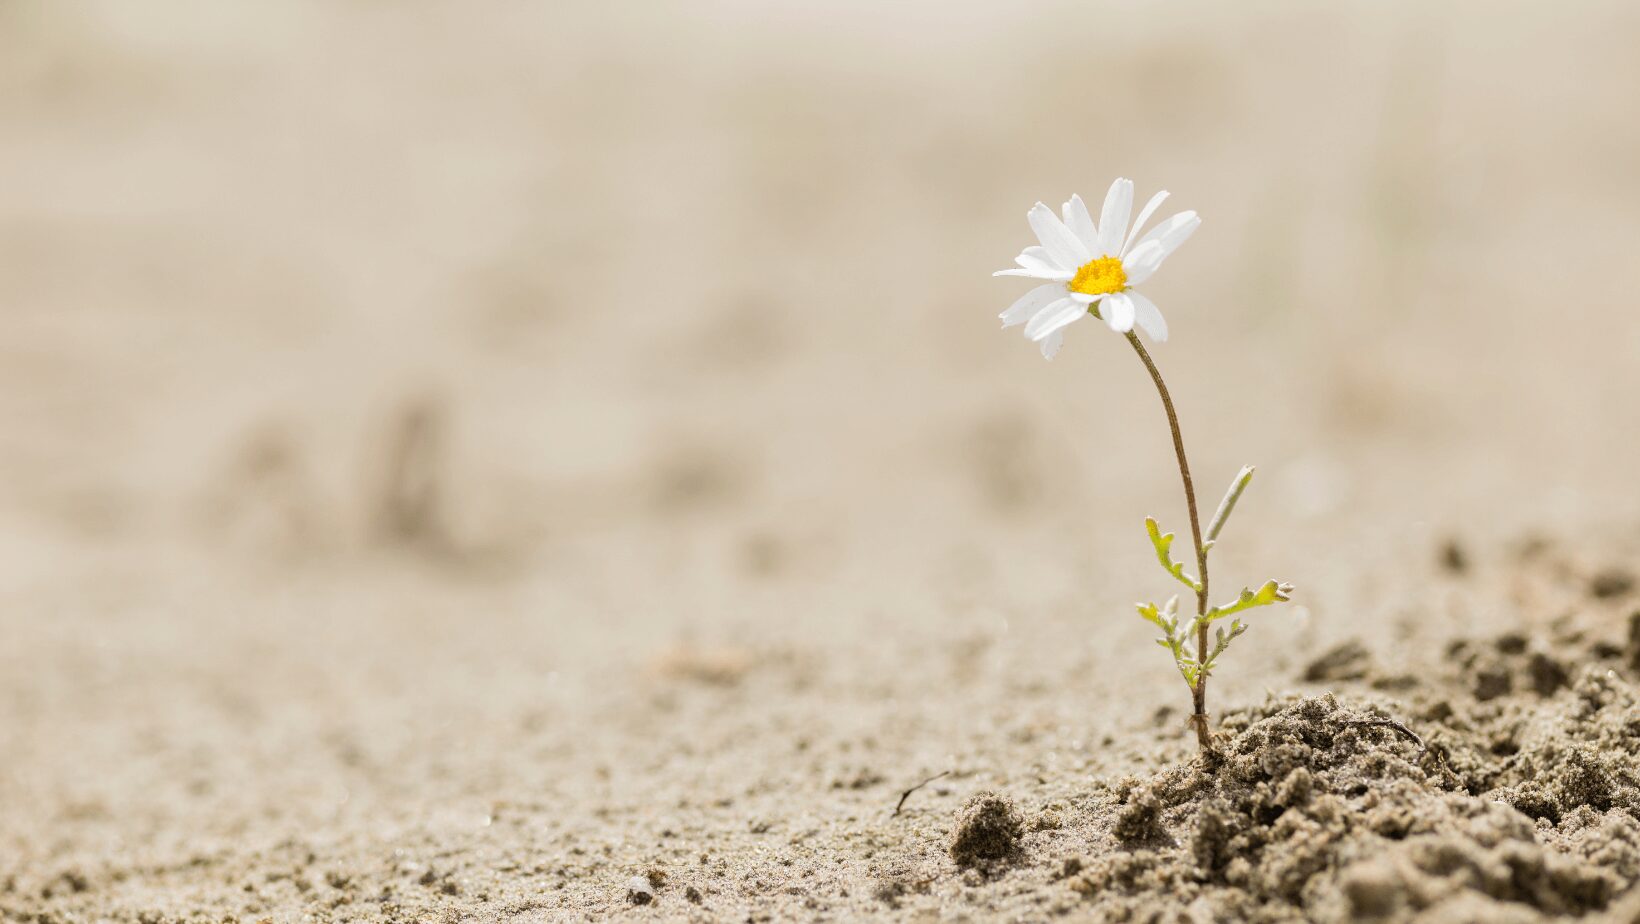 simbolo di resilienza, perché un fiore sboccia su un terreno altrimenti secco e arido.